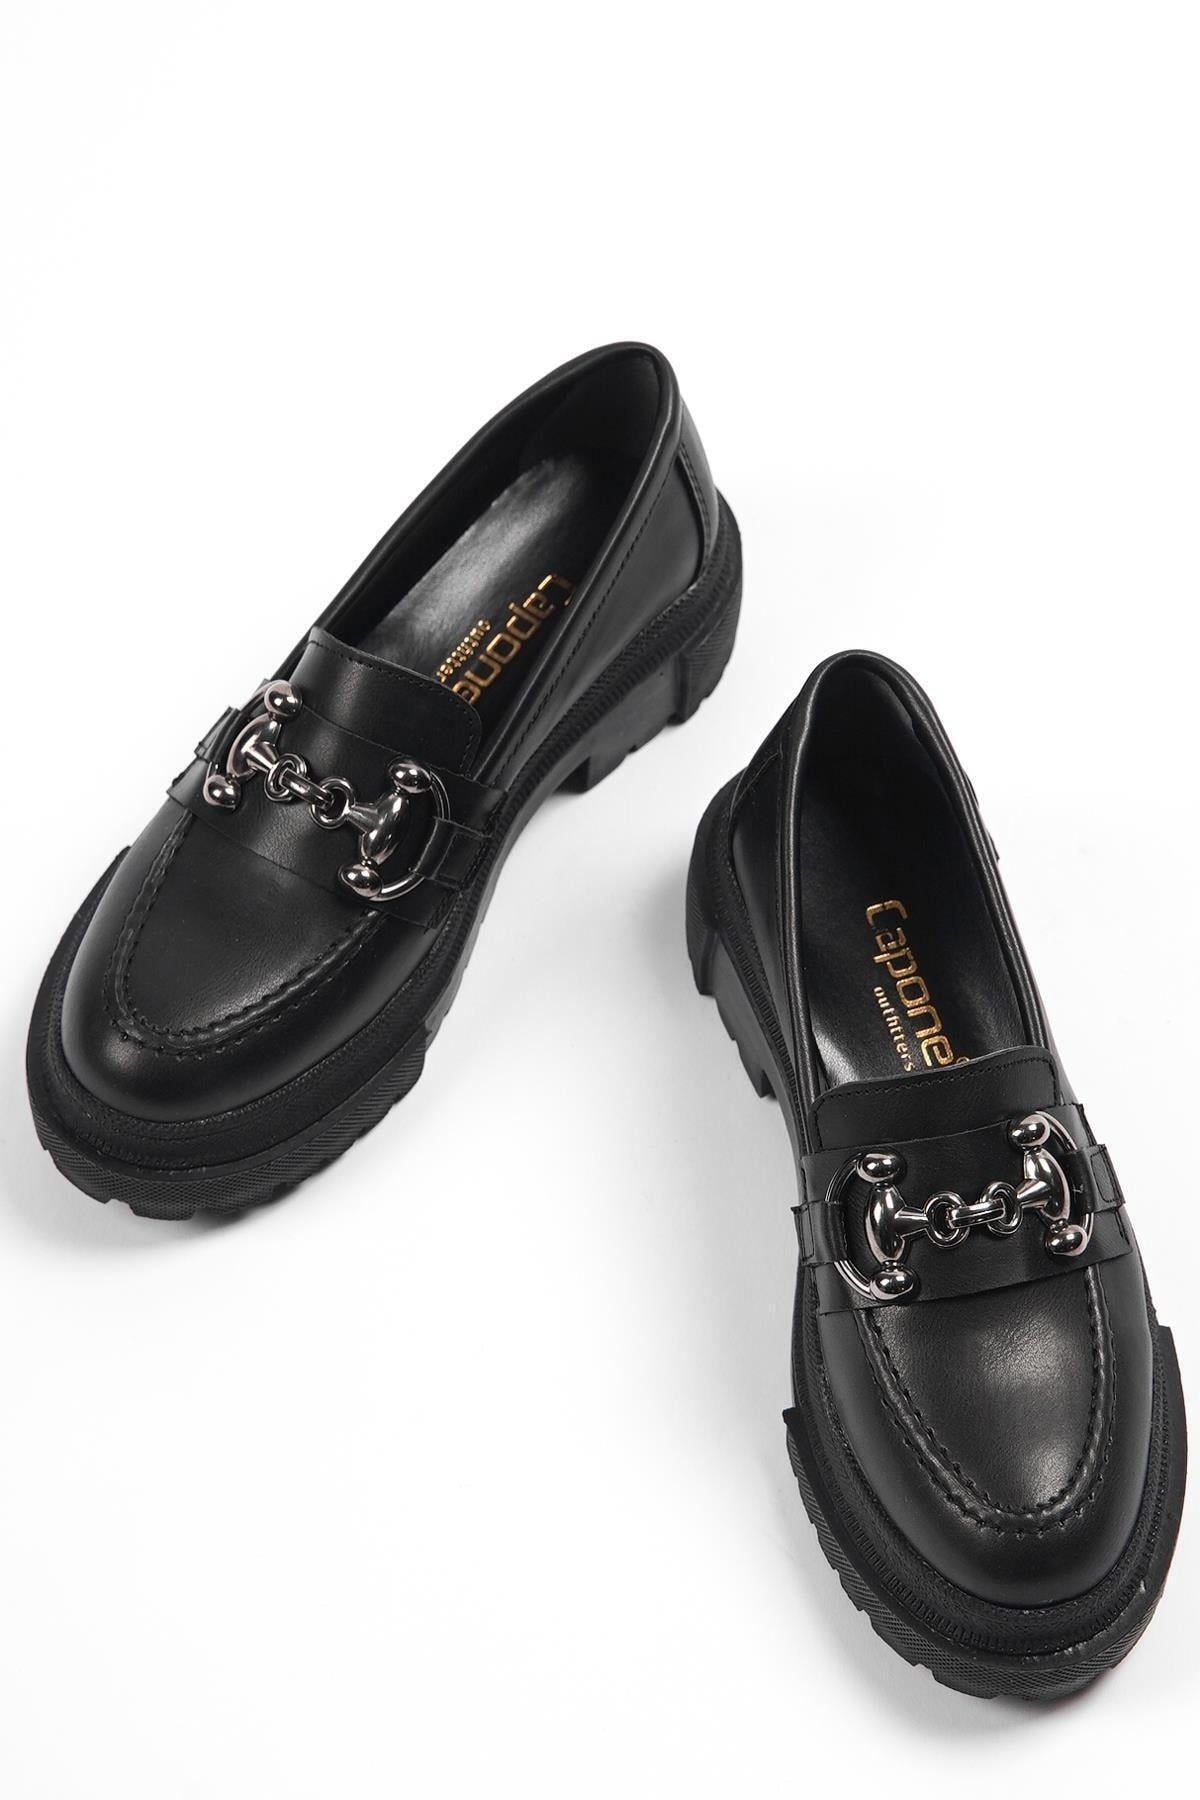 Capone Oval Toe Metal Buckle Trak Sole Black Women's Loafers